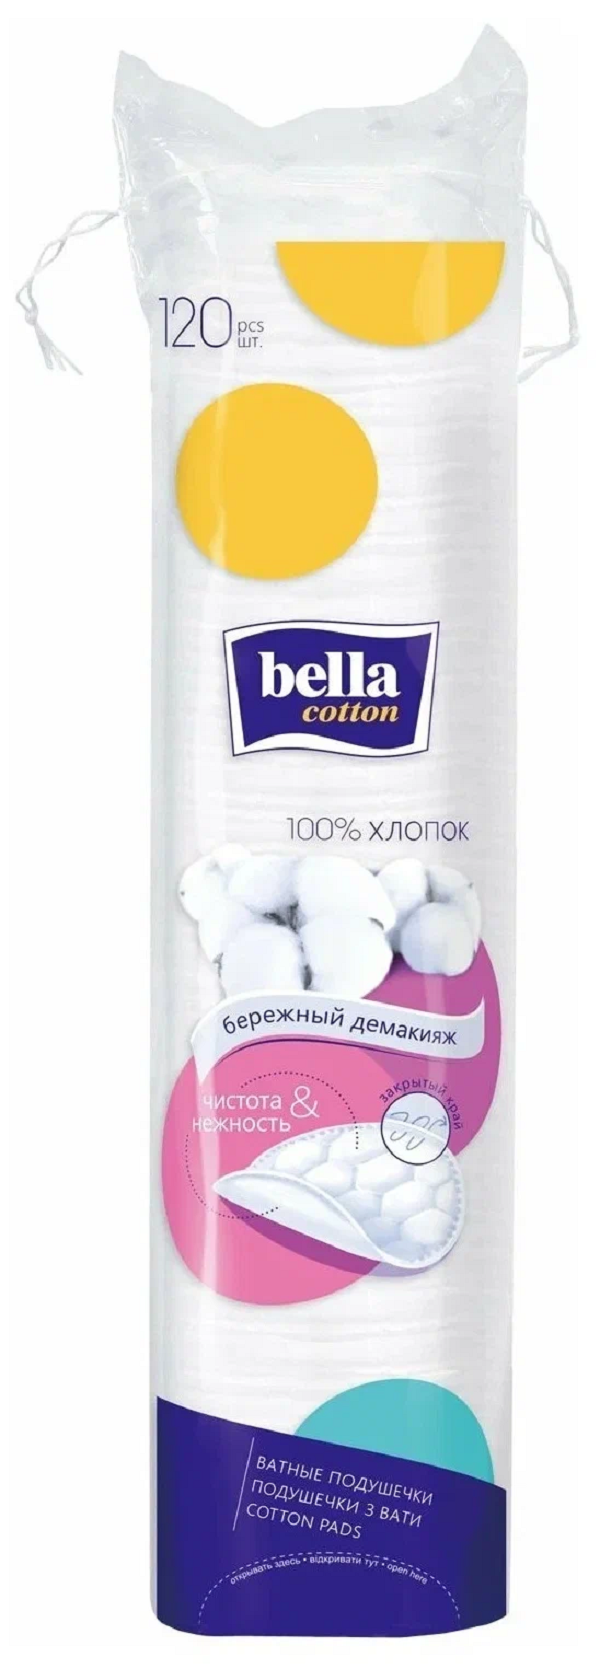 Диски ватные Bella Cotton хлопок, 120 шт. lp care диски ватные pure cotton с добавлением ионов серебра 120